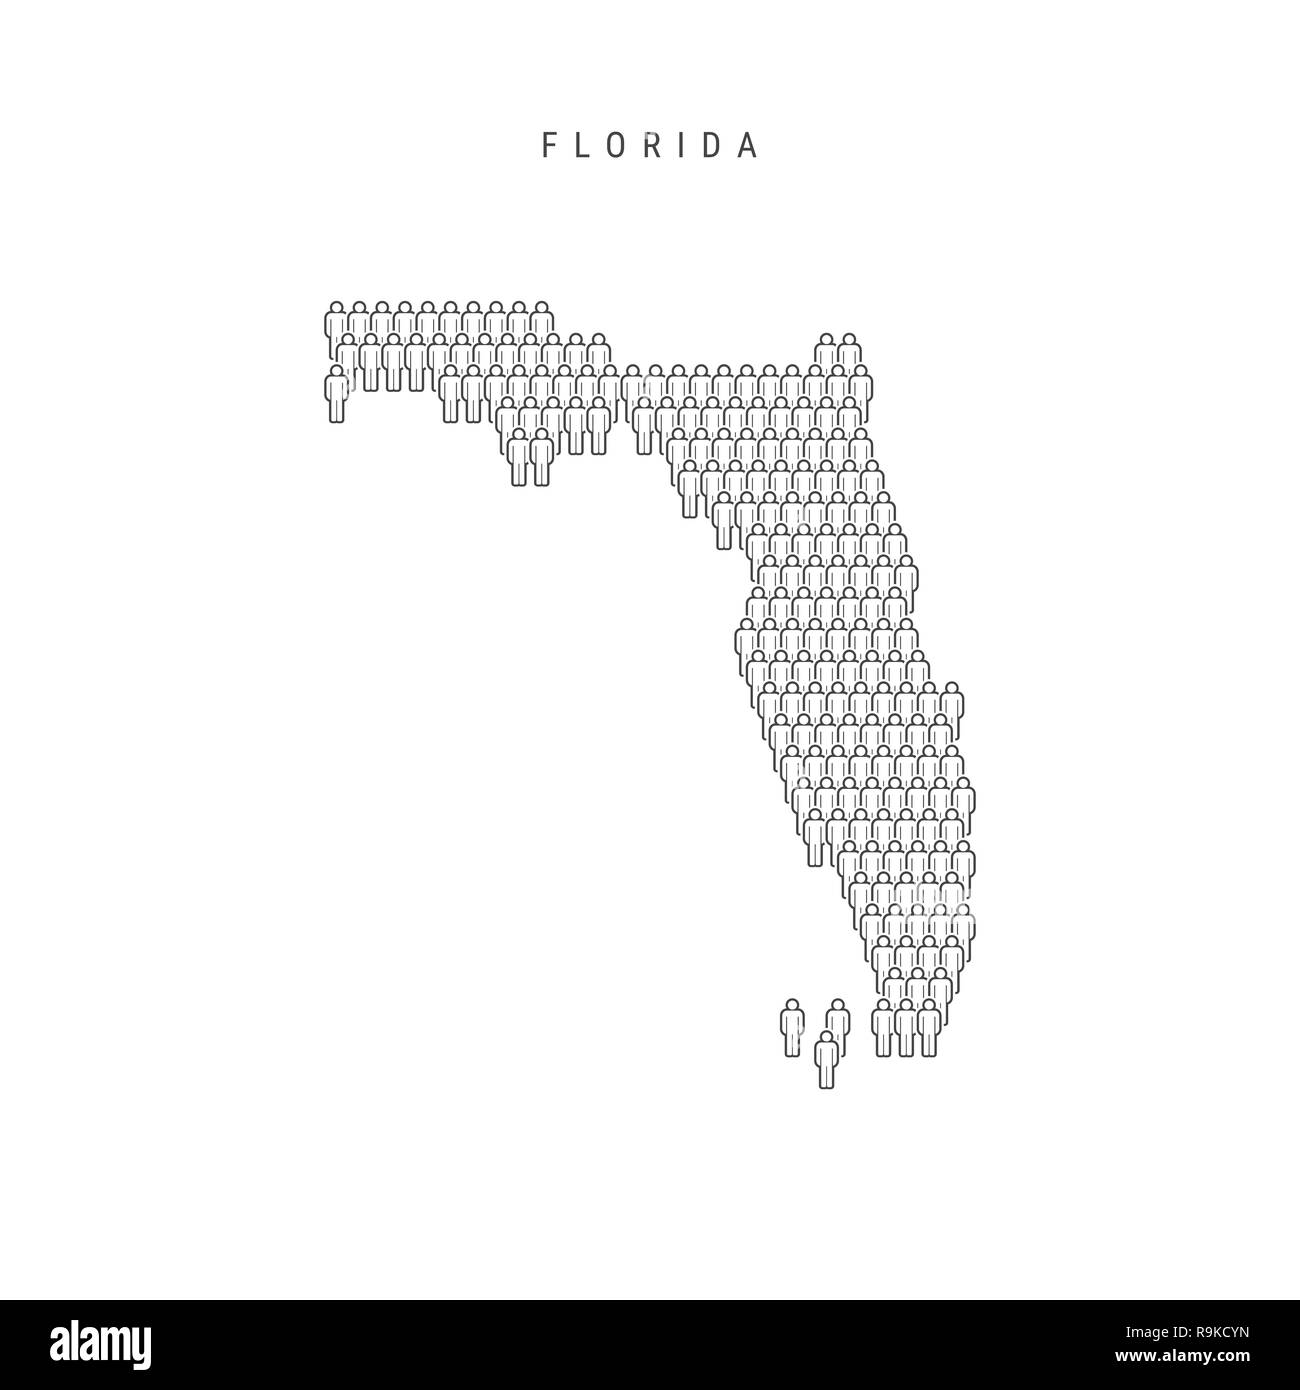 Leute Karte von Florida, US-Staat. Stilisierte Silhouette, Leute in der Form einer Karte von Florida. Florida Bevölkerung. Abbildung isoliert auf Whit Stockfoto